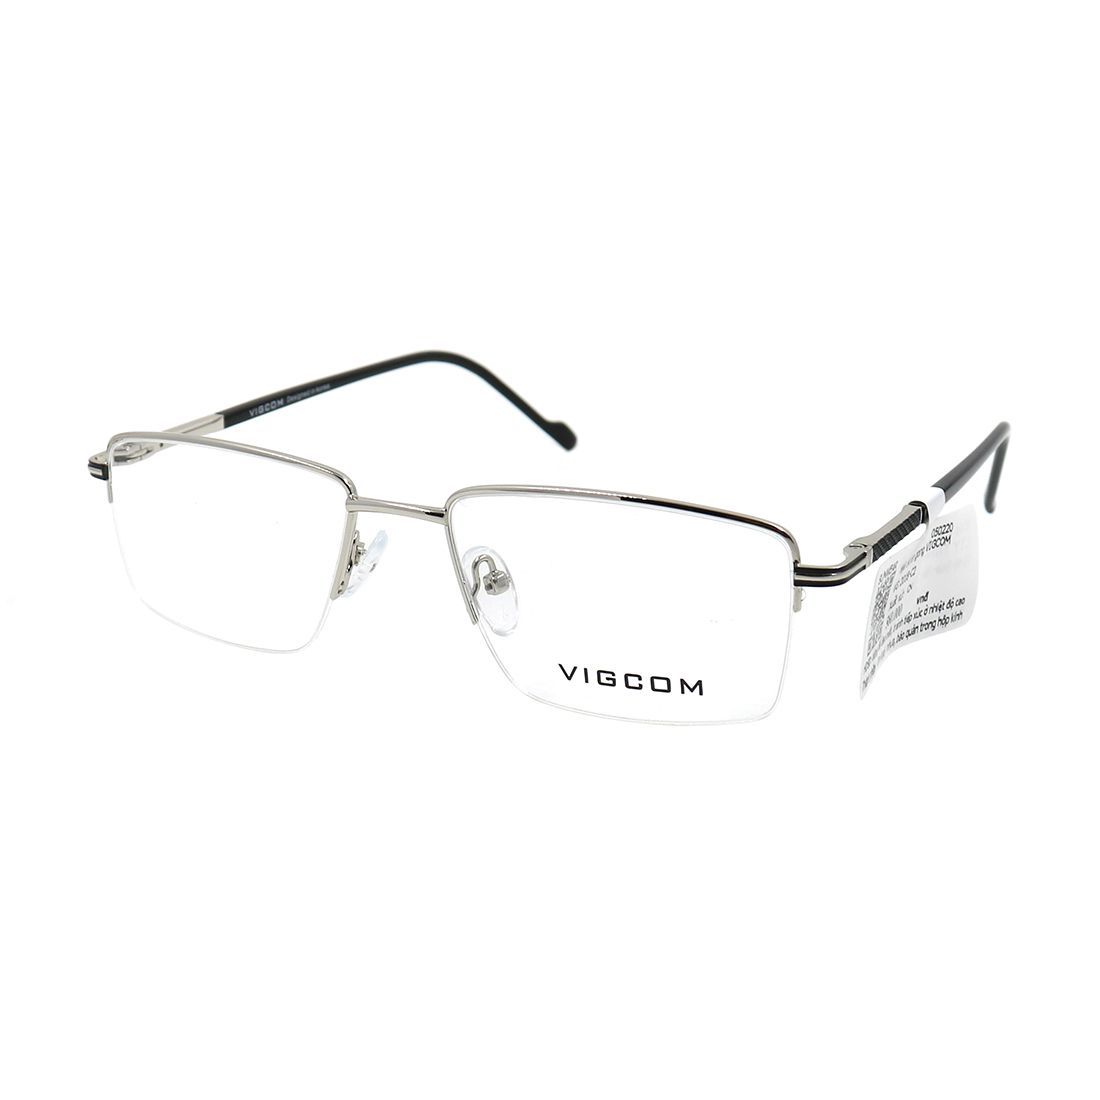  Gọng kính Vigcom VG2018 C2 